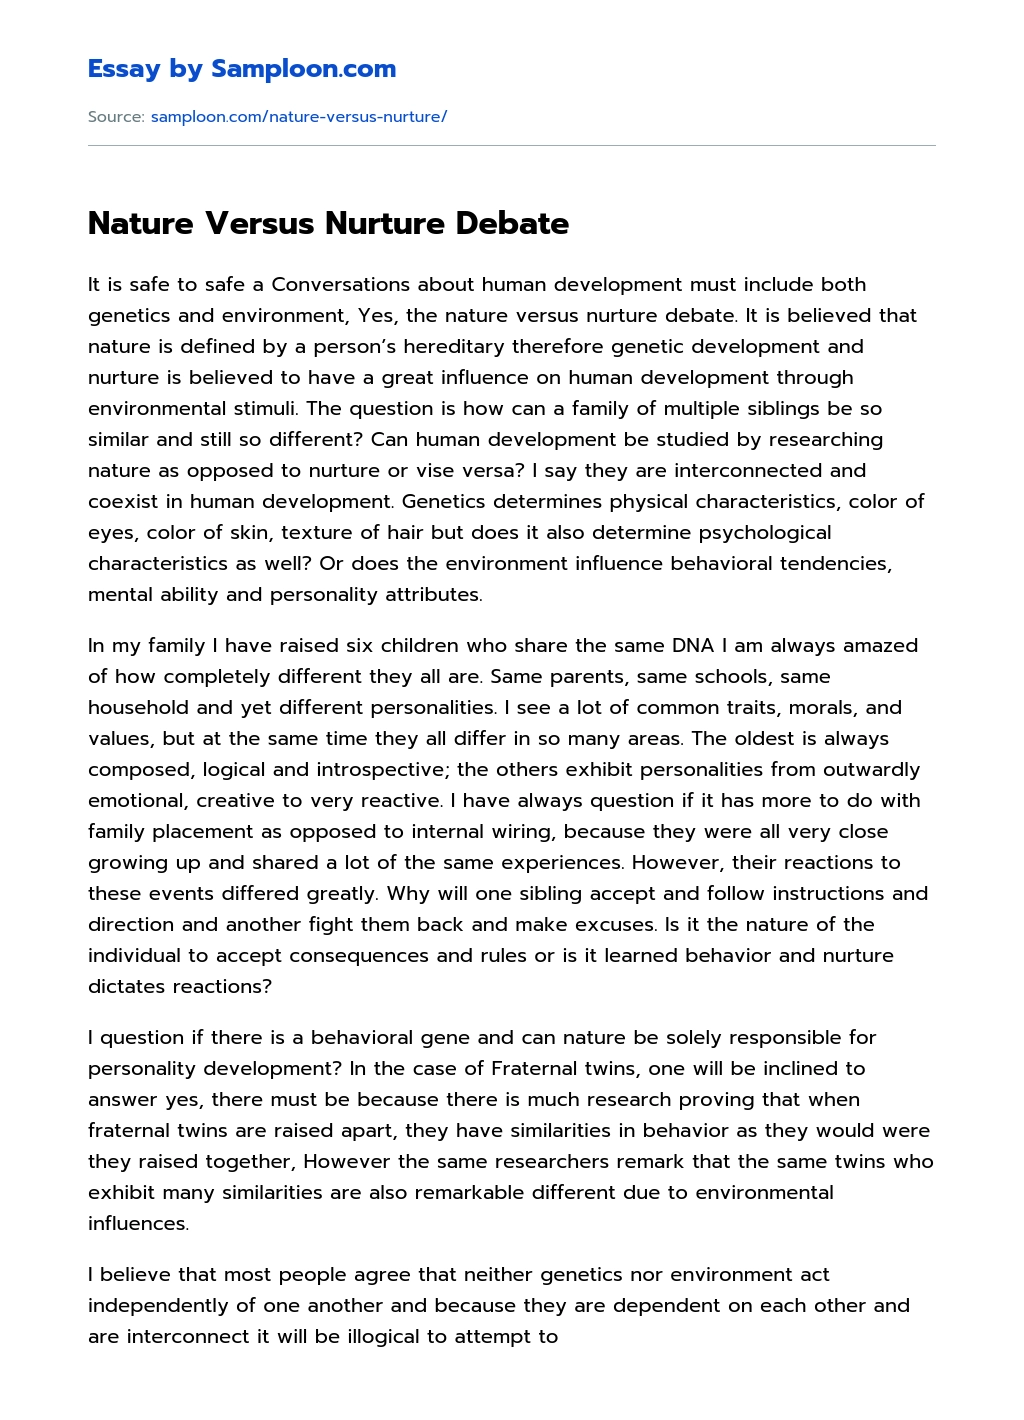 Nature Versus Nurture Debate essay